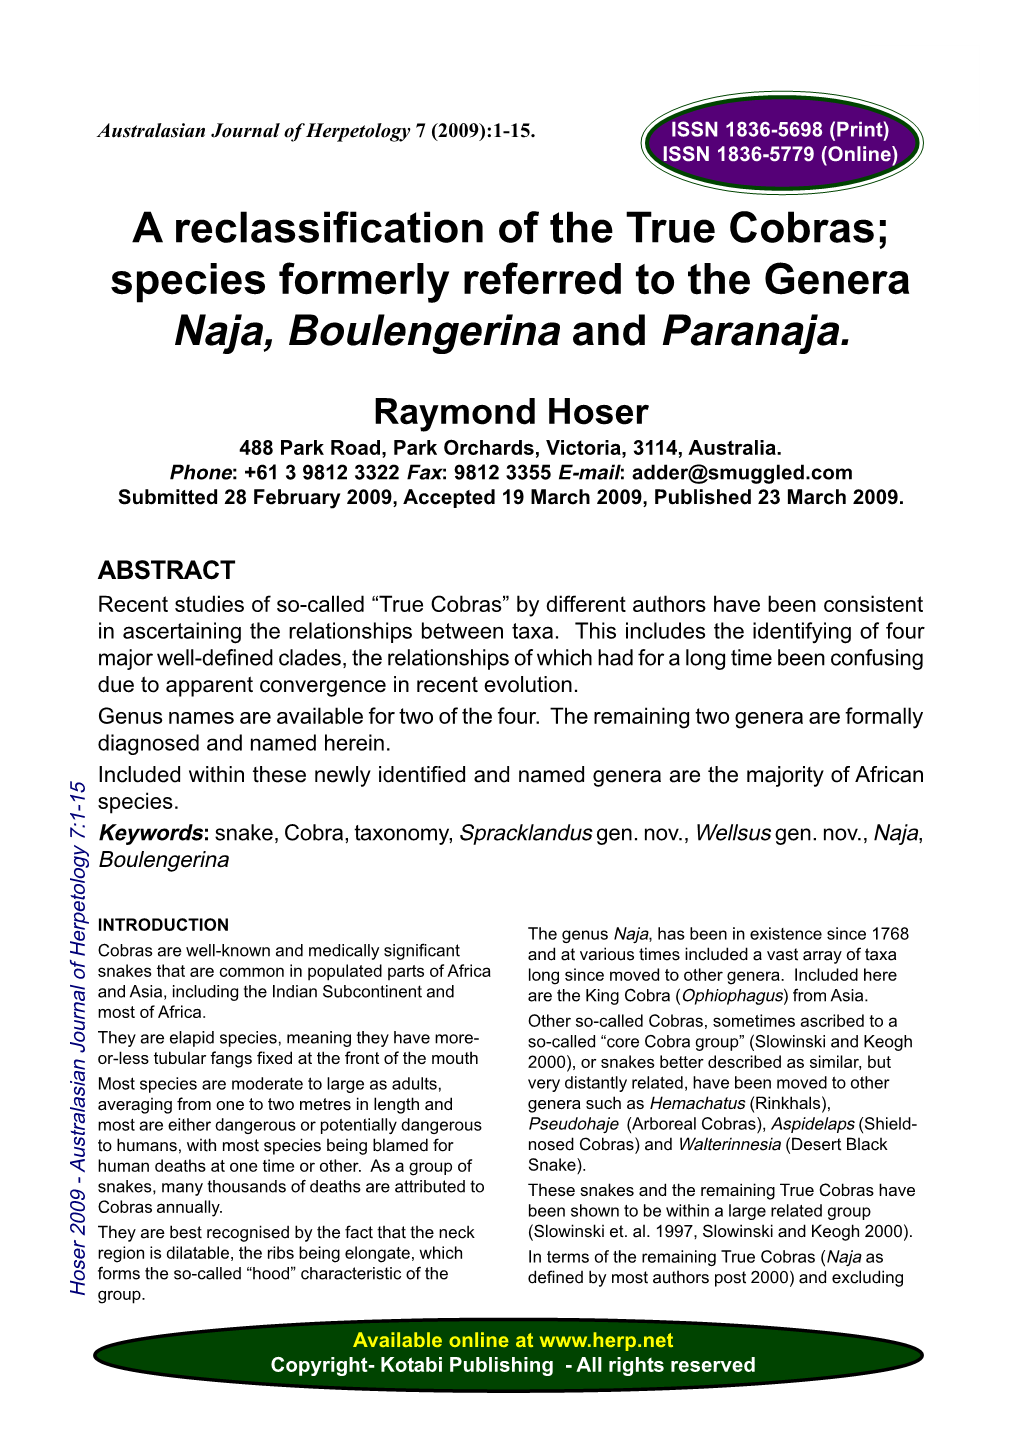 Species Formerly Referred to the Genera Naja, Boulengerina and Paranaja